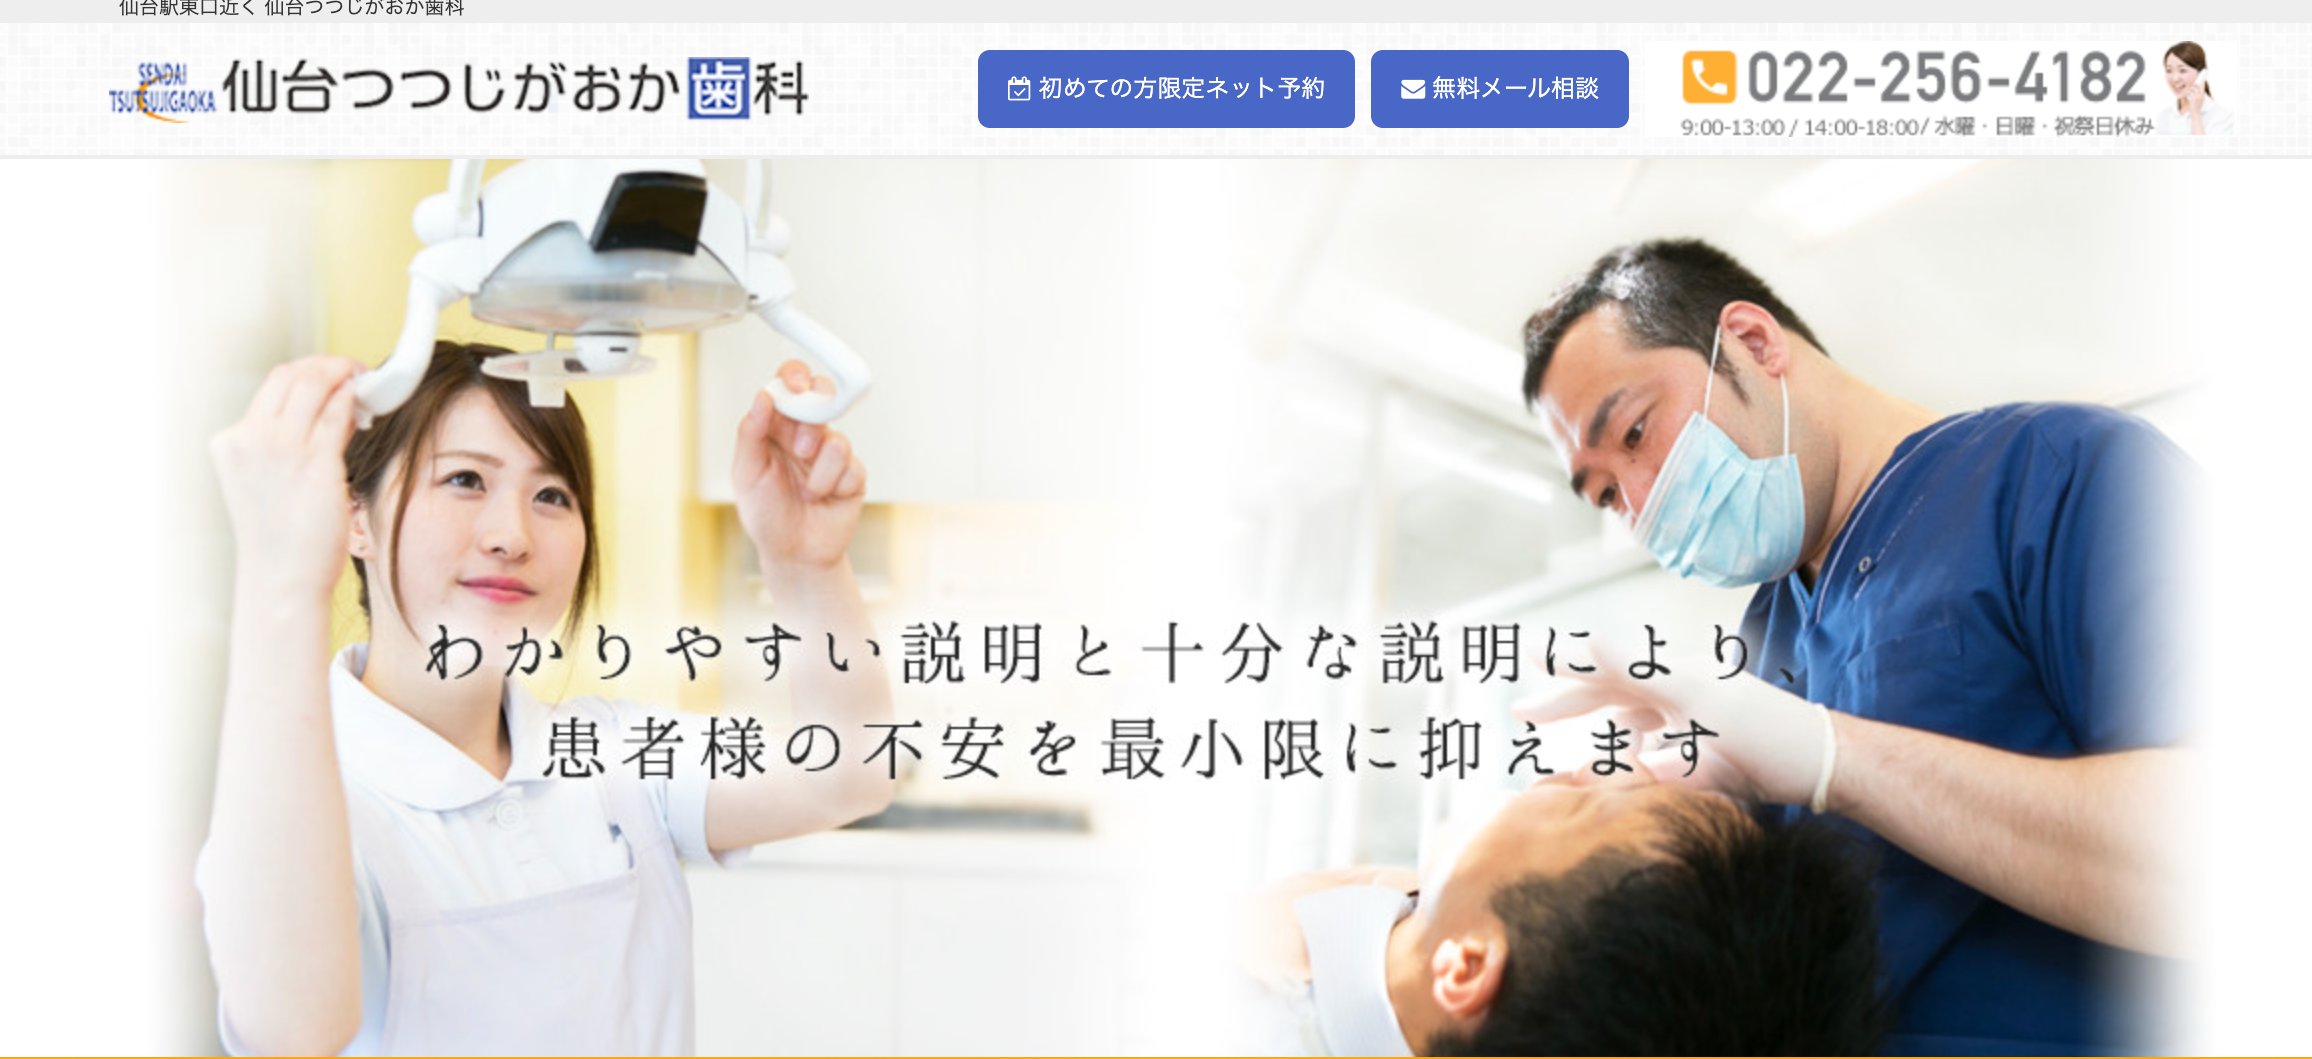 仙台市の審美治療におすすめの歯科クリニック5選 仙台つつじがおか歯科クリニック